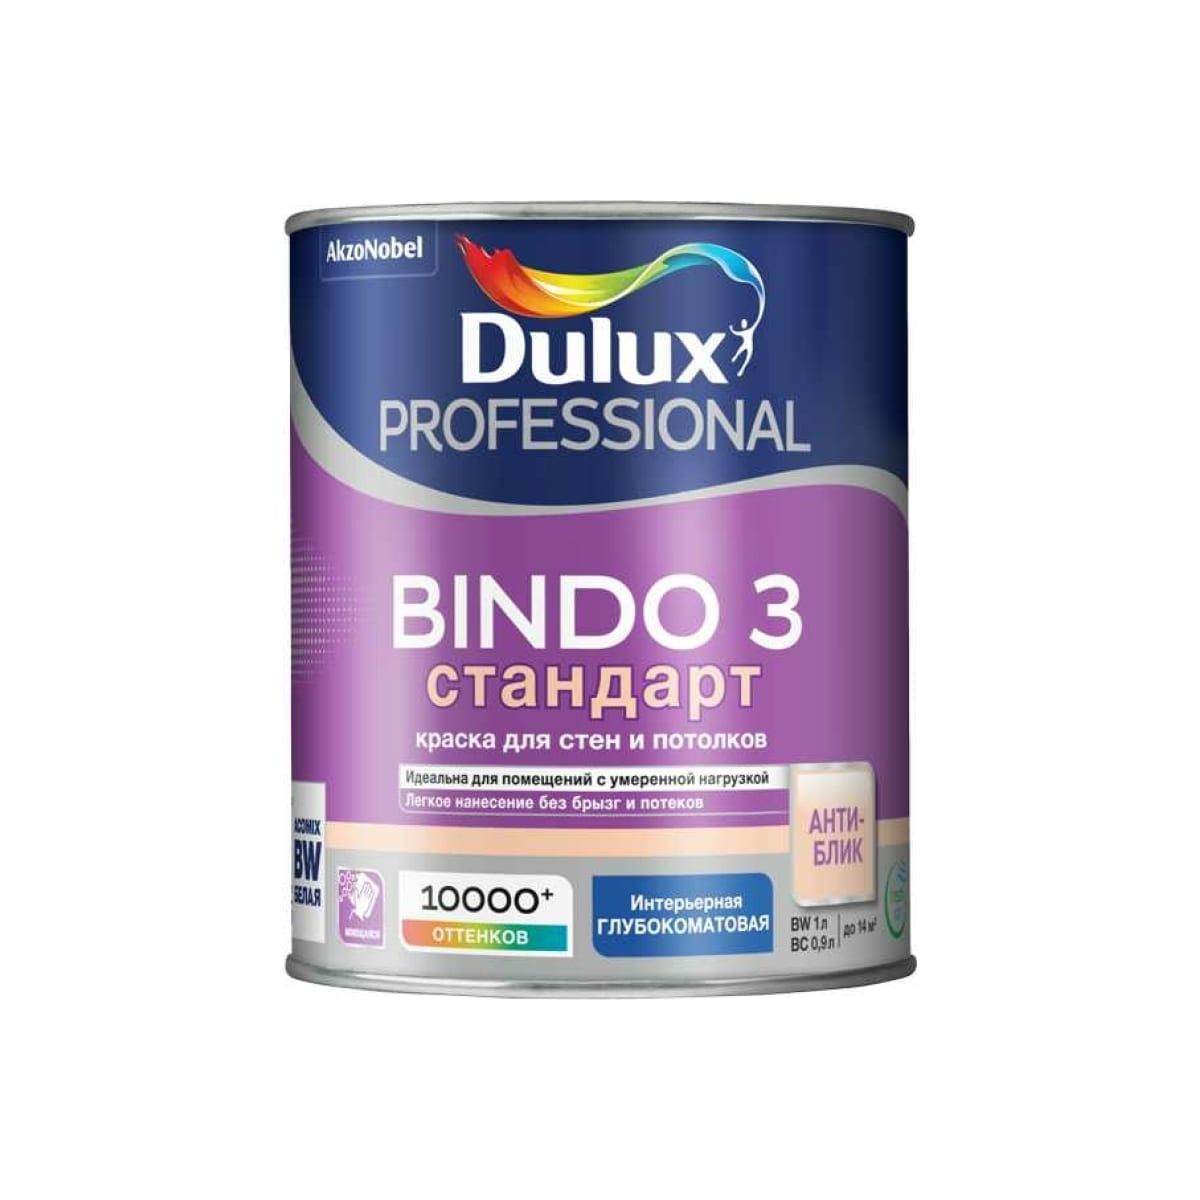 Краска для стен и потолков Dulux Professional Bindo 3, глубокоматовая, база BW, 1 л конструктор военная база 1460 деталей тм архитектурное моделирование